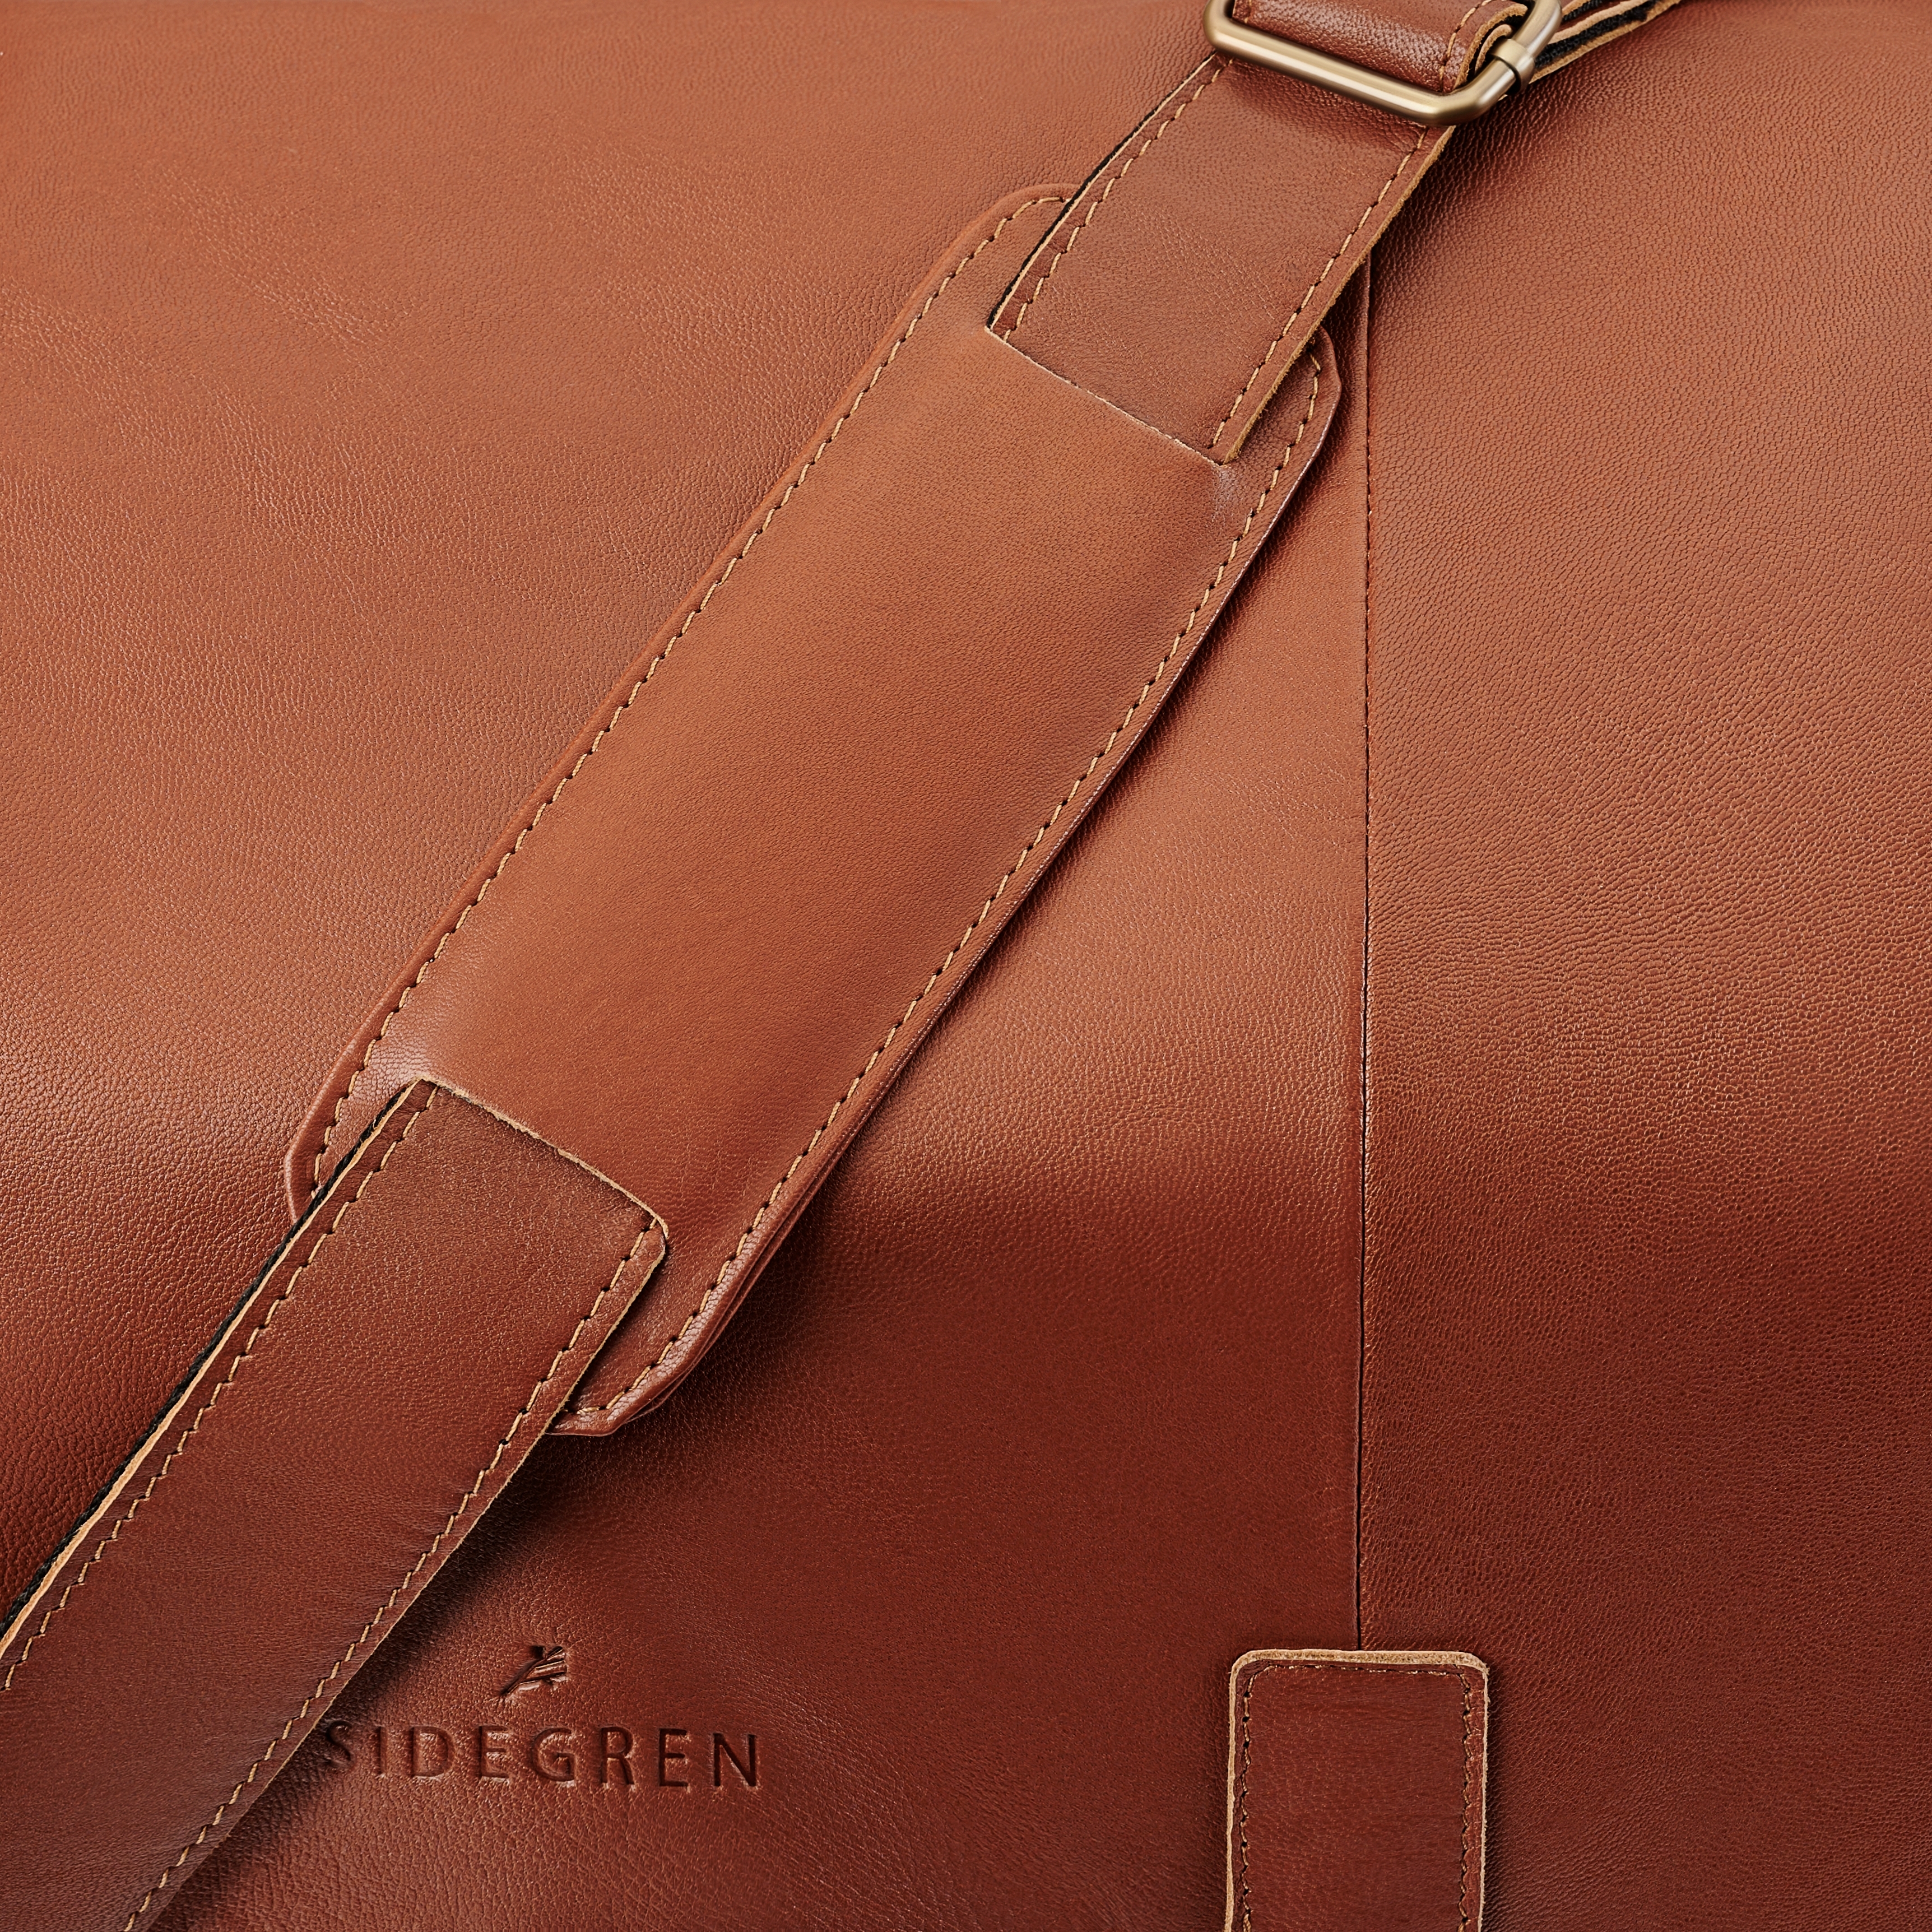 Fidei | Large Mocha Full Grain Goat Leather Laptop Bag - for Men - Sidegren